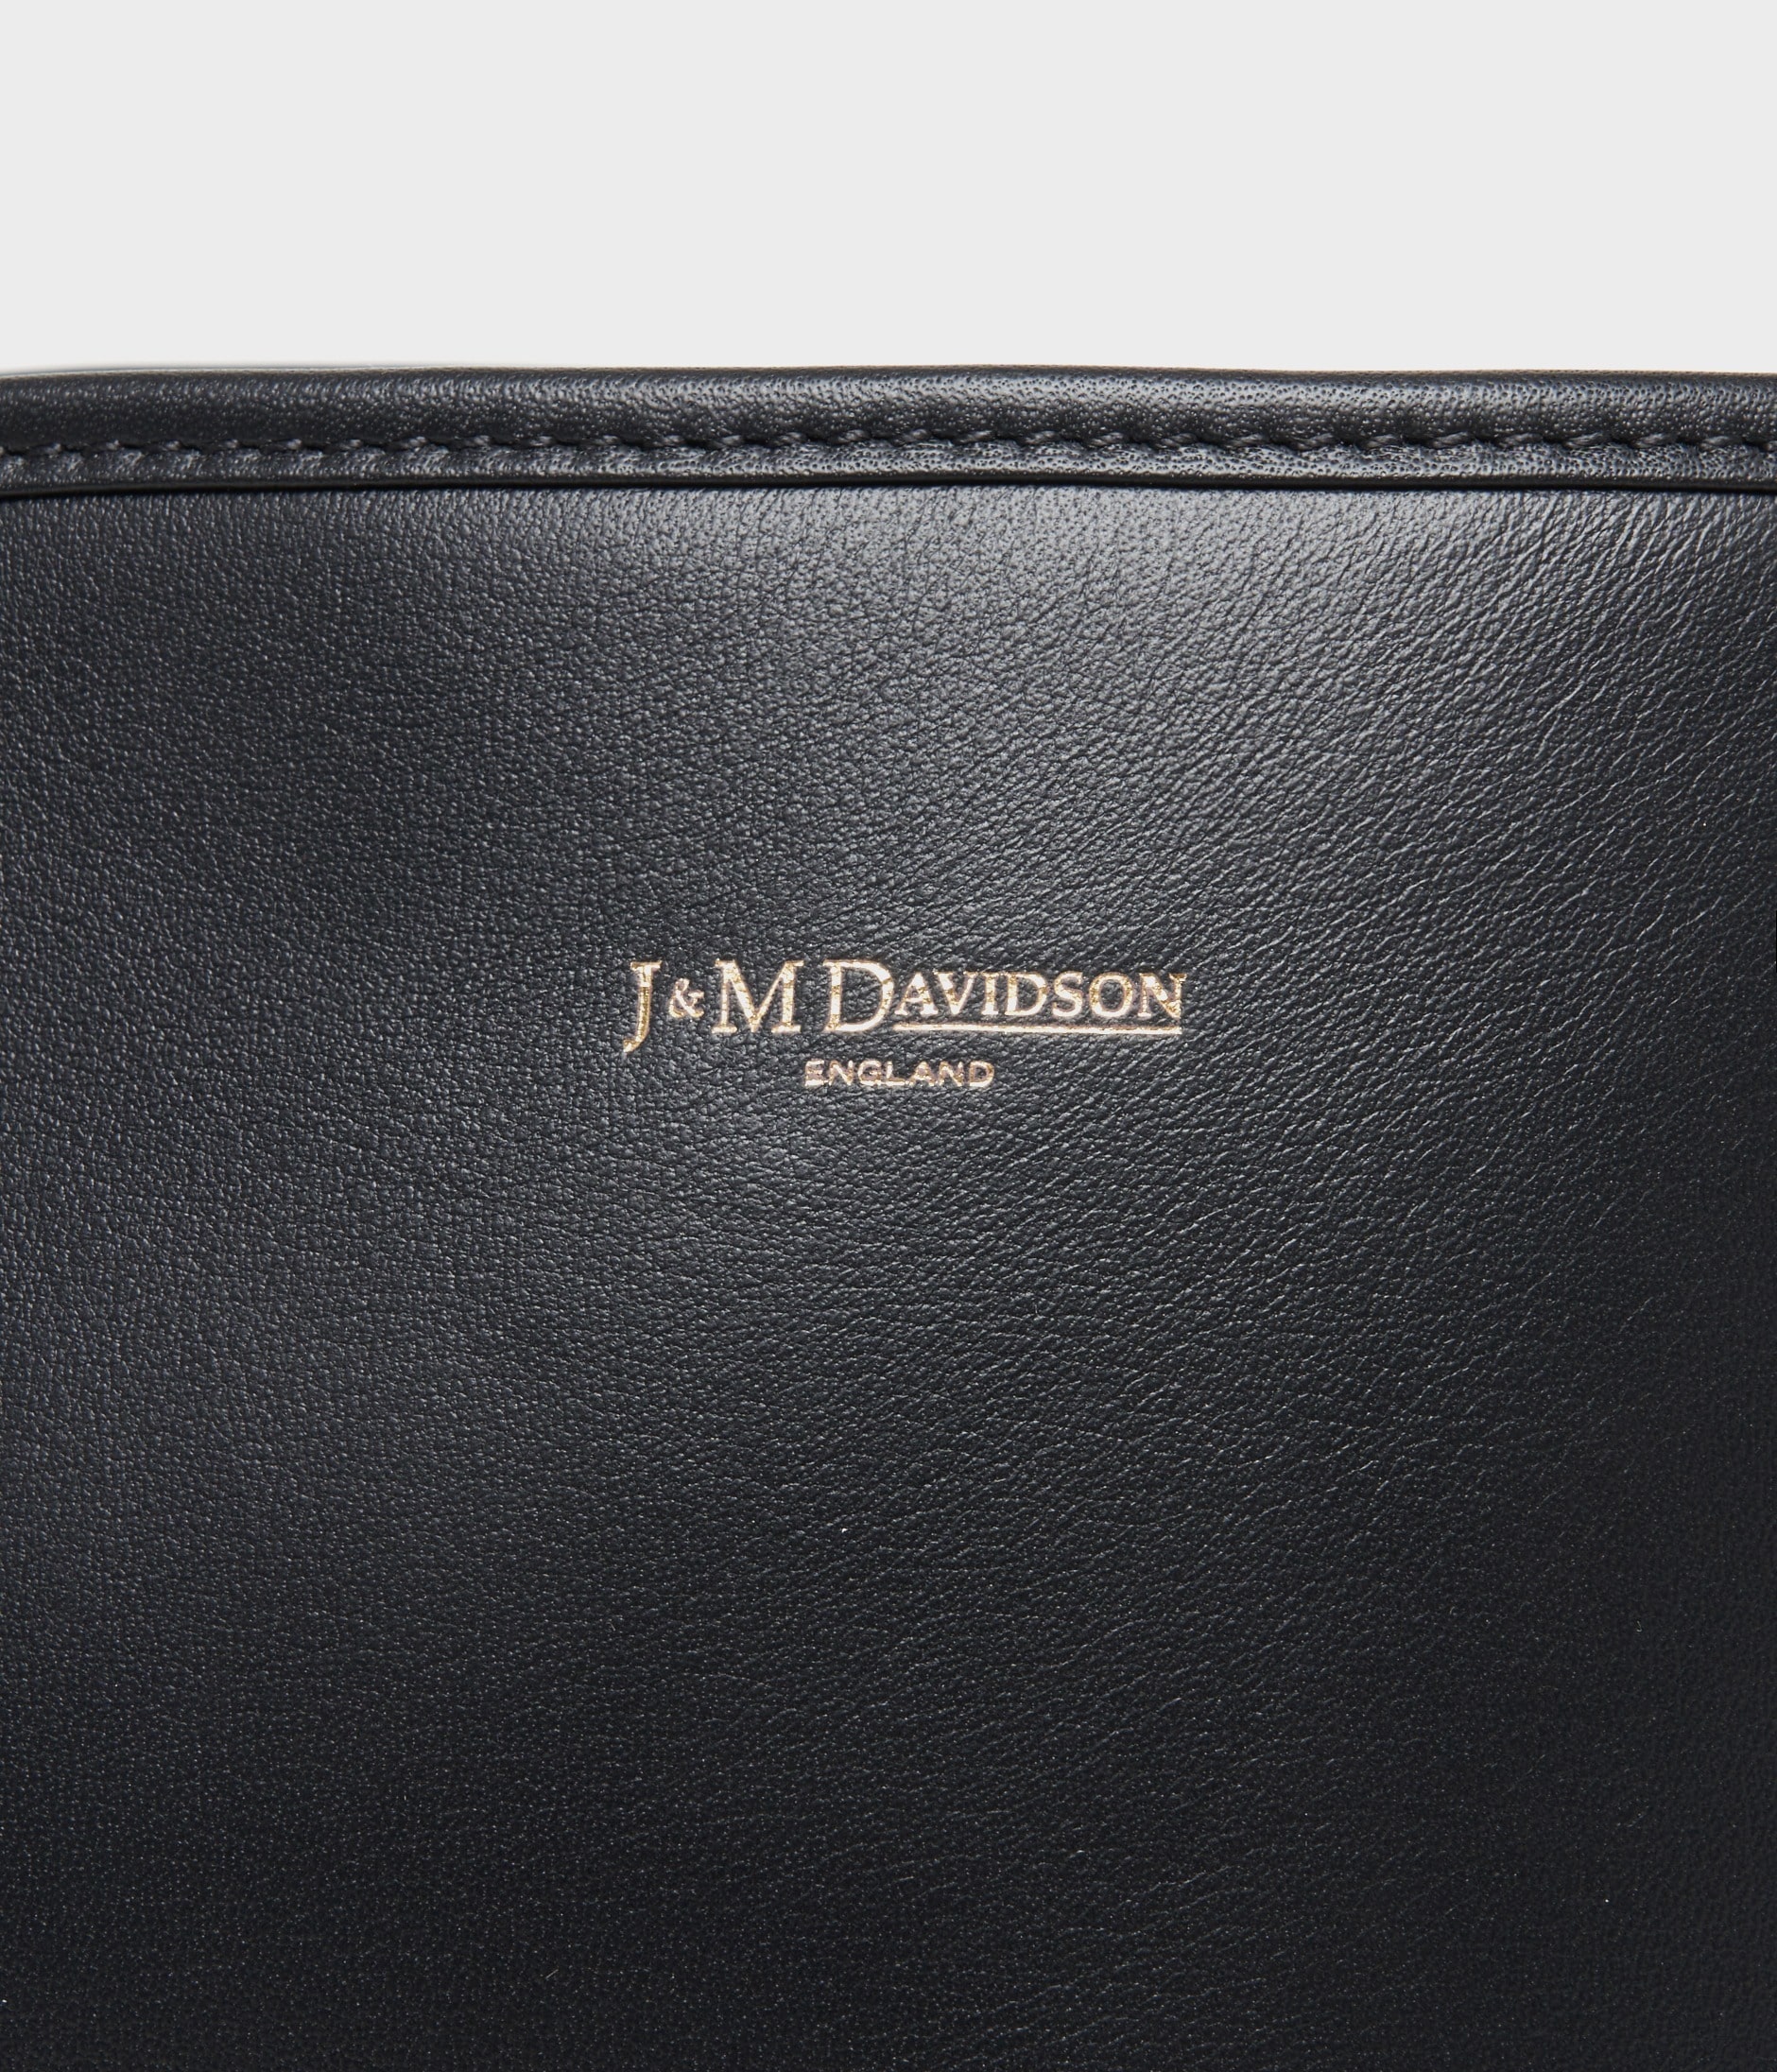 J&Mデヴィッドソンのバッグ ショルダーバッグ バッグ レディース 人気の商品が勢揃い